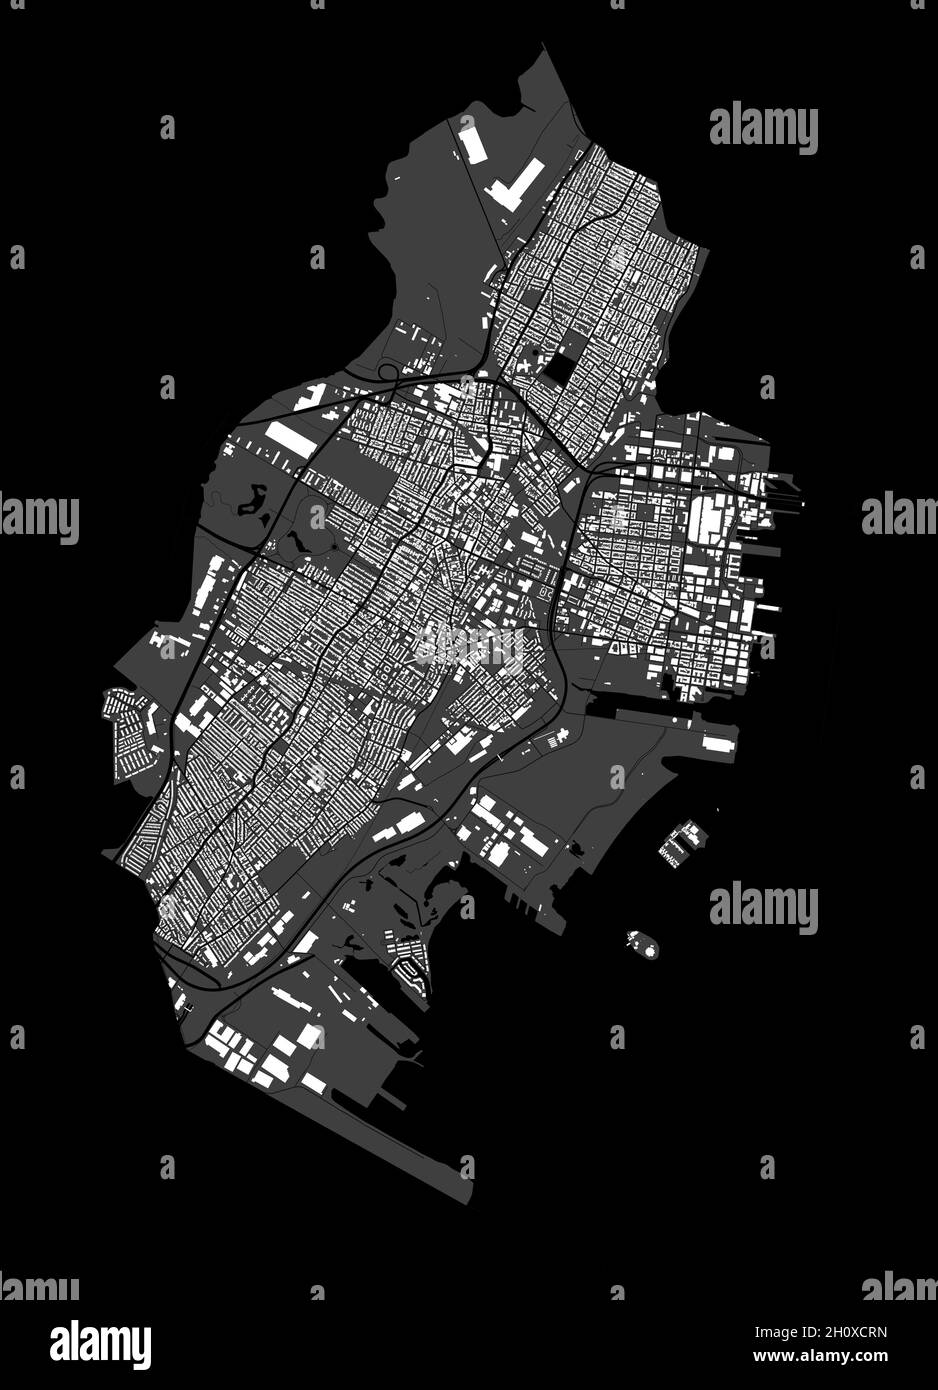 Jersey-Karte. Detaillierte Vektorkarte des Verwaltungsgebiets der Stadt Jersey. Blick auf das Stadtbild mit Postern und die Arie der Metropole. Schwarzes Land mit weißen Gebäuden, Wasser, f Stock Vektor